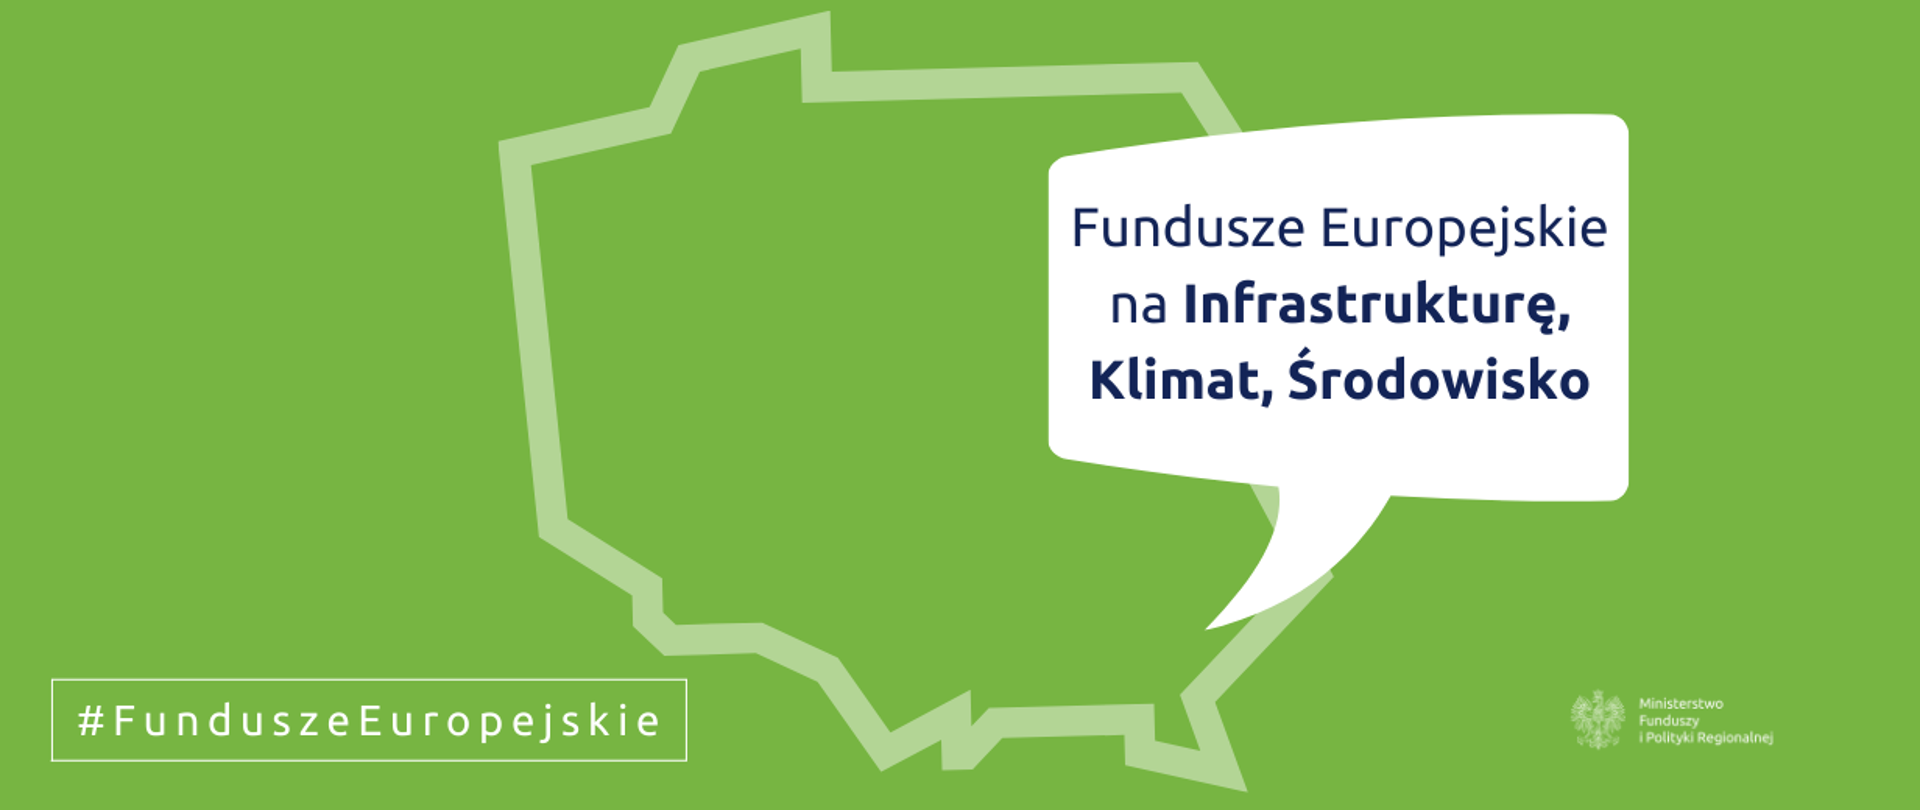 Zielone tło, na nim kontury mapy Polski i z "dymkiem" zaznaczonym w miejscu Rzeszowa i napis: Fundusze Europejskie na Infrastrukturę, Klimat i Środowisko. Na dole logo MFiPR.